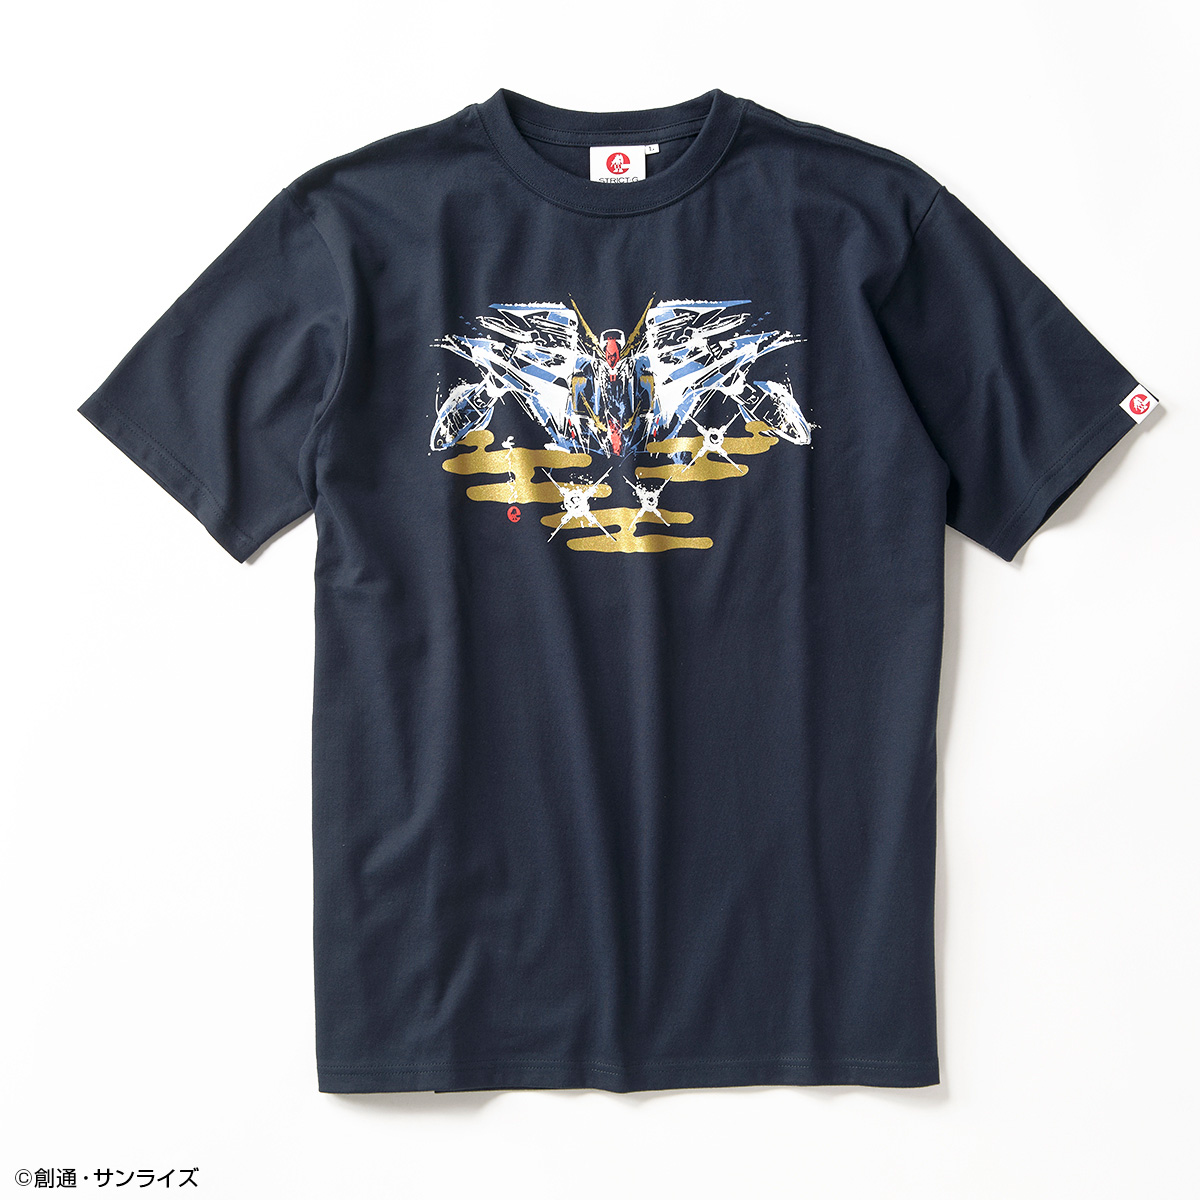 STRICT-G JAPAN『機動戦士ガンダム 閃光のハサウェイ』Tシャツ 筆絵風「Ξ」(クスィー)ガンダム柄